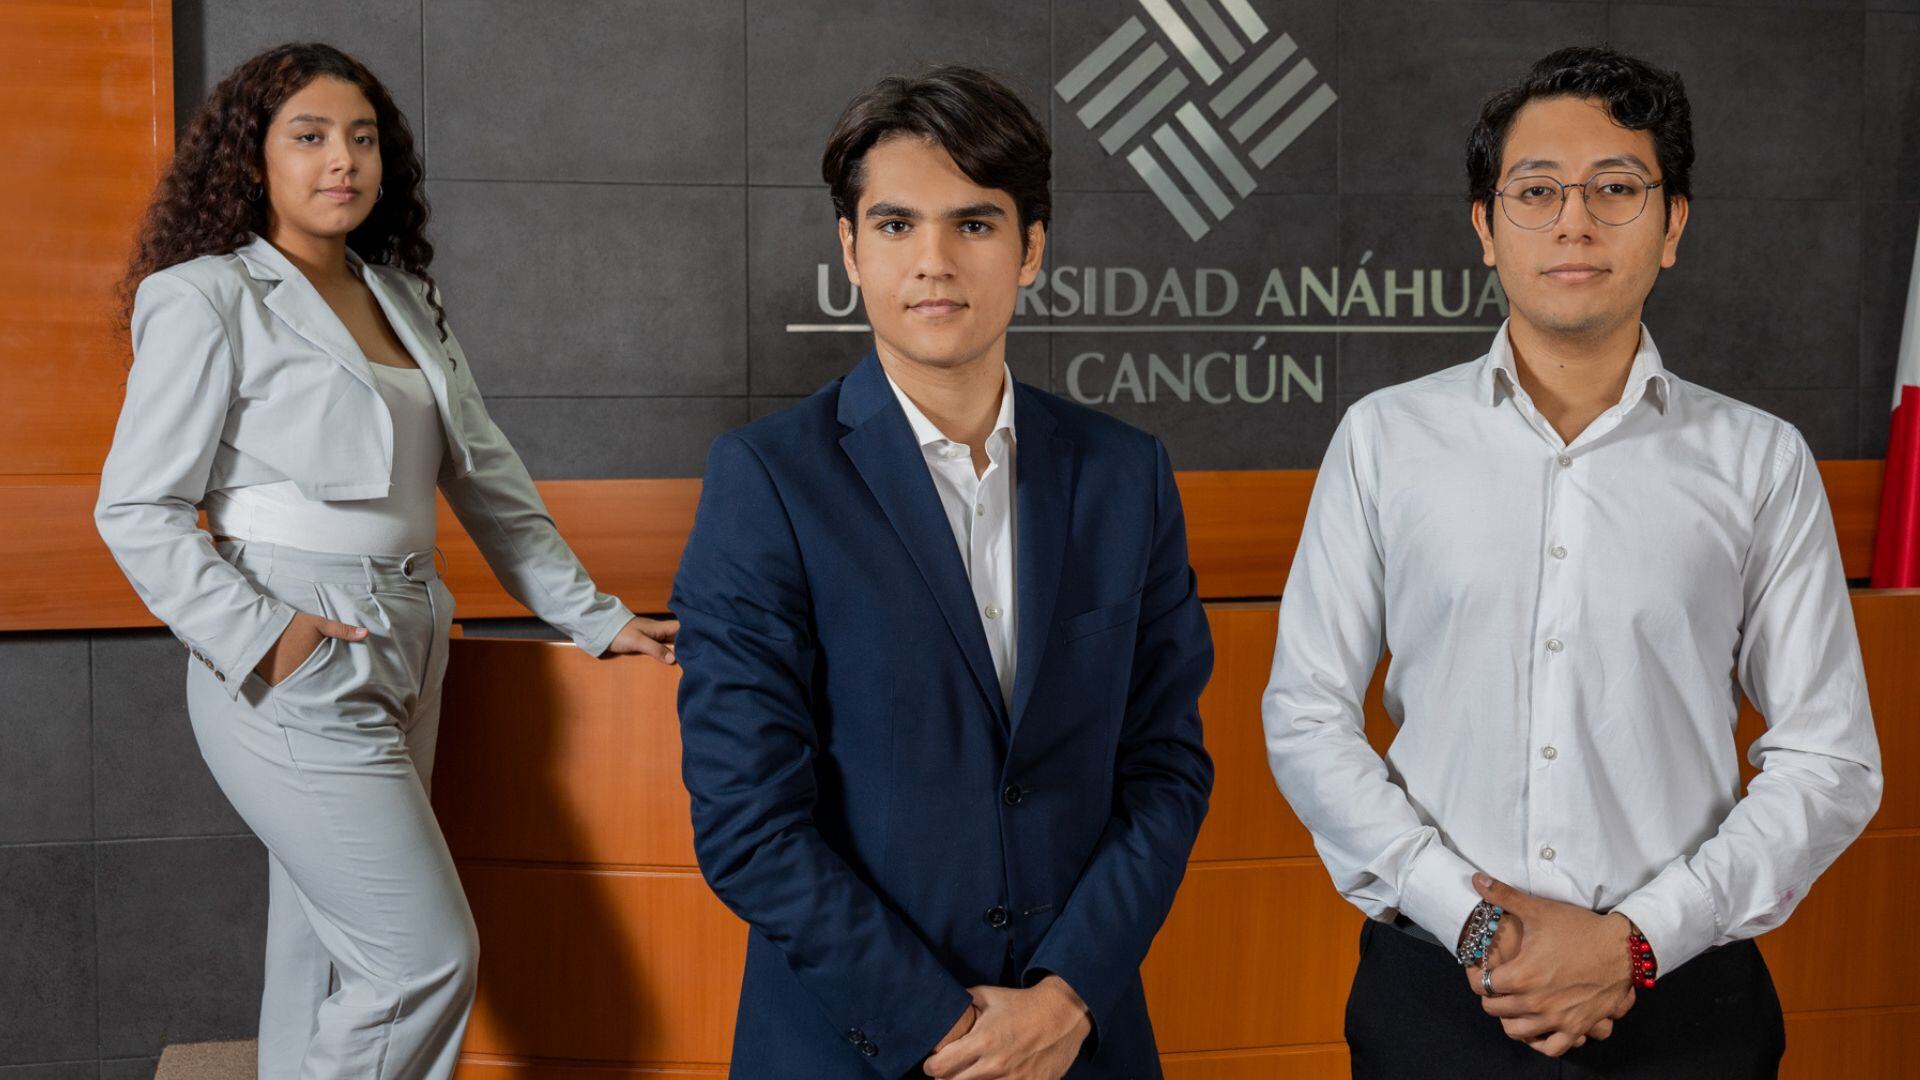 La Licenciatura en Administración Pública y Gobierno de la Universidad Anáhuac Cancún: Forjando Líderes para el Futuro